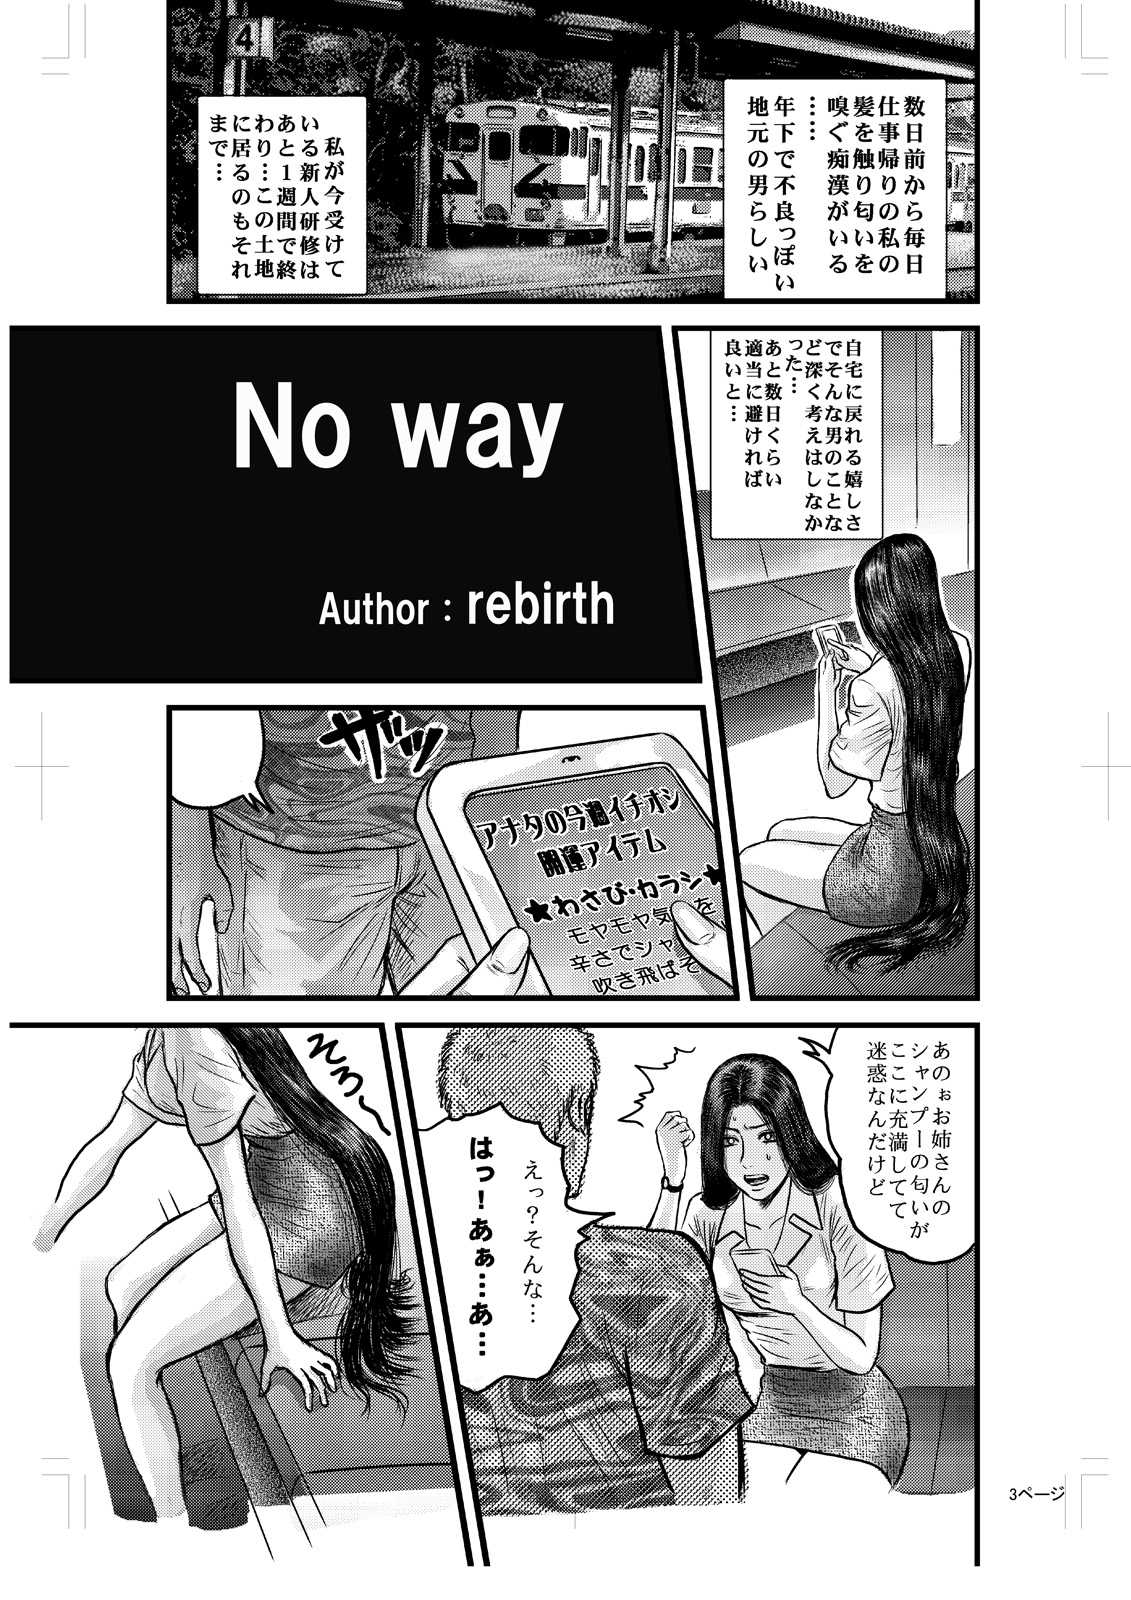 [rebirth] No way 